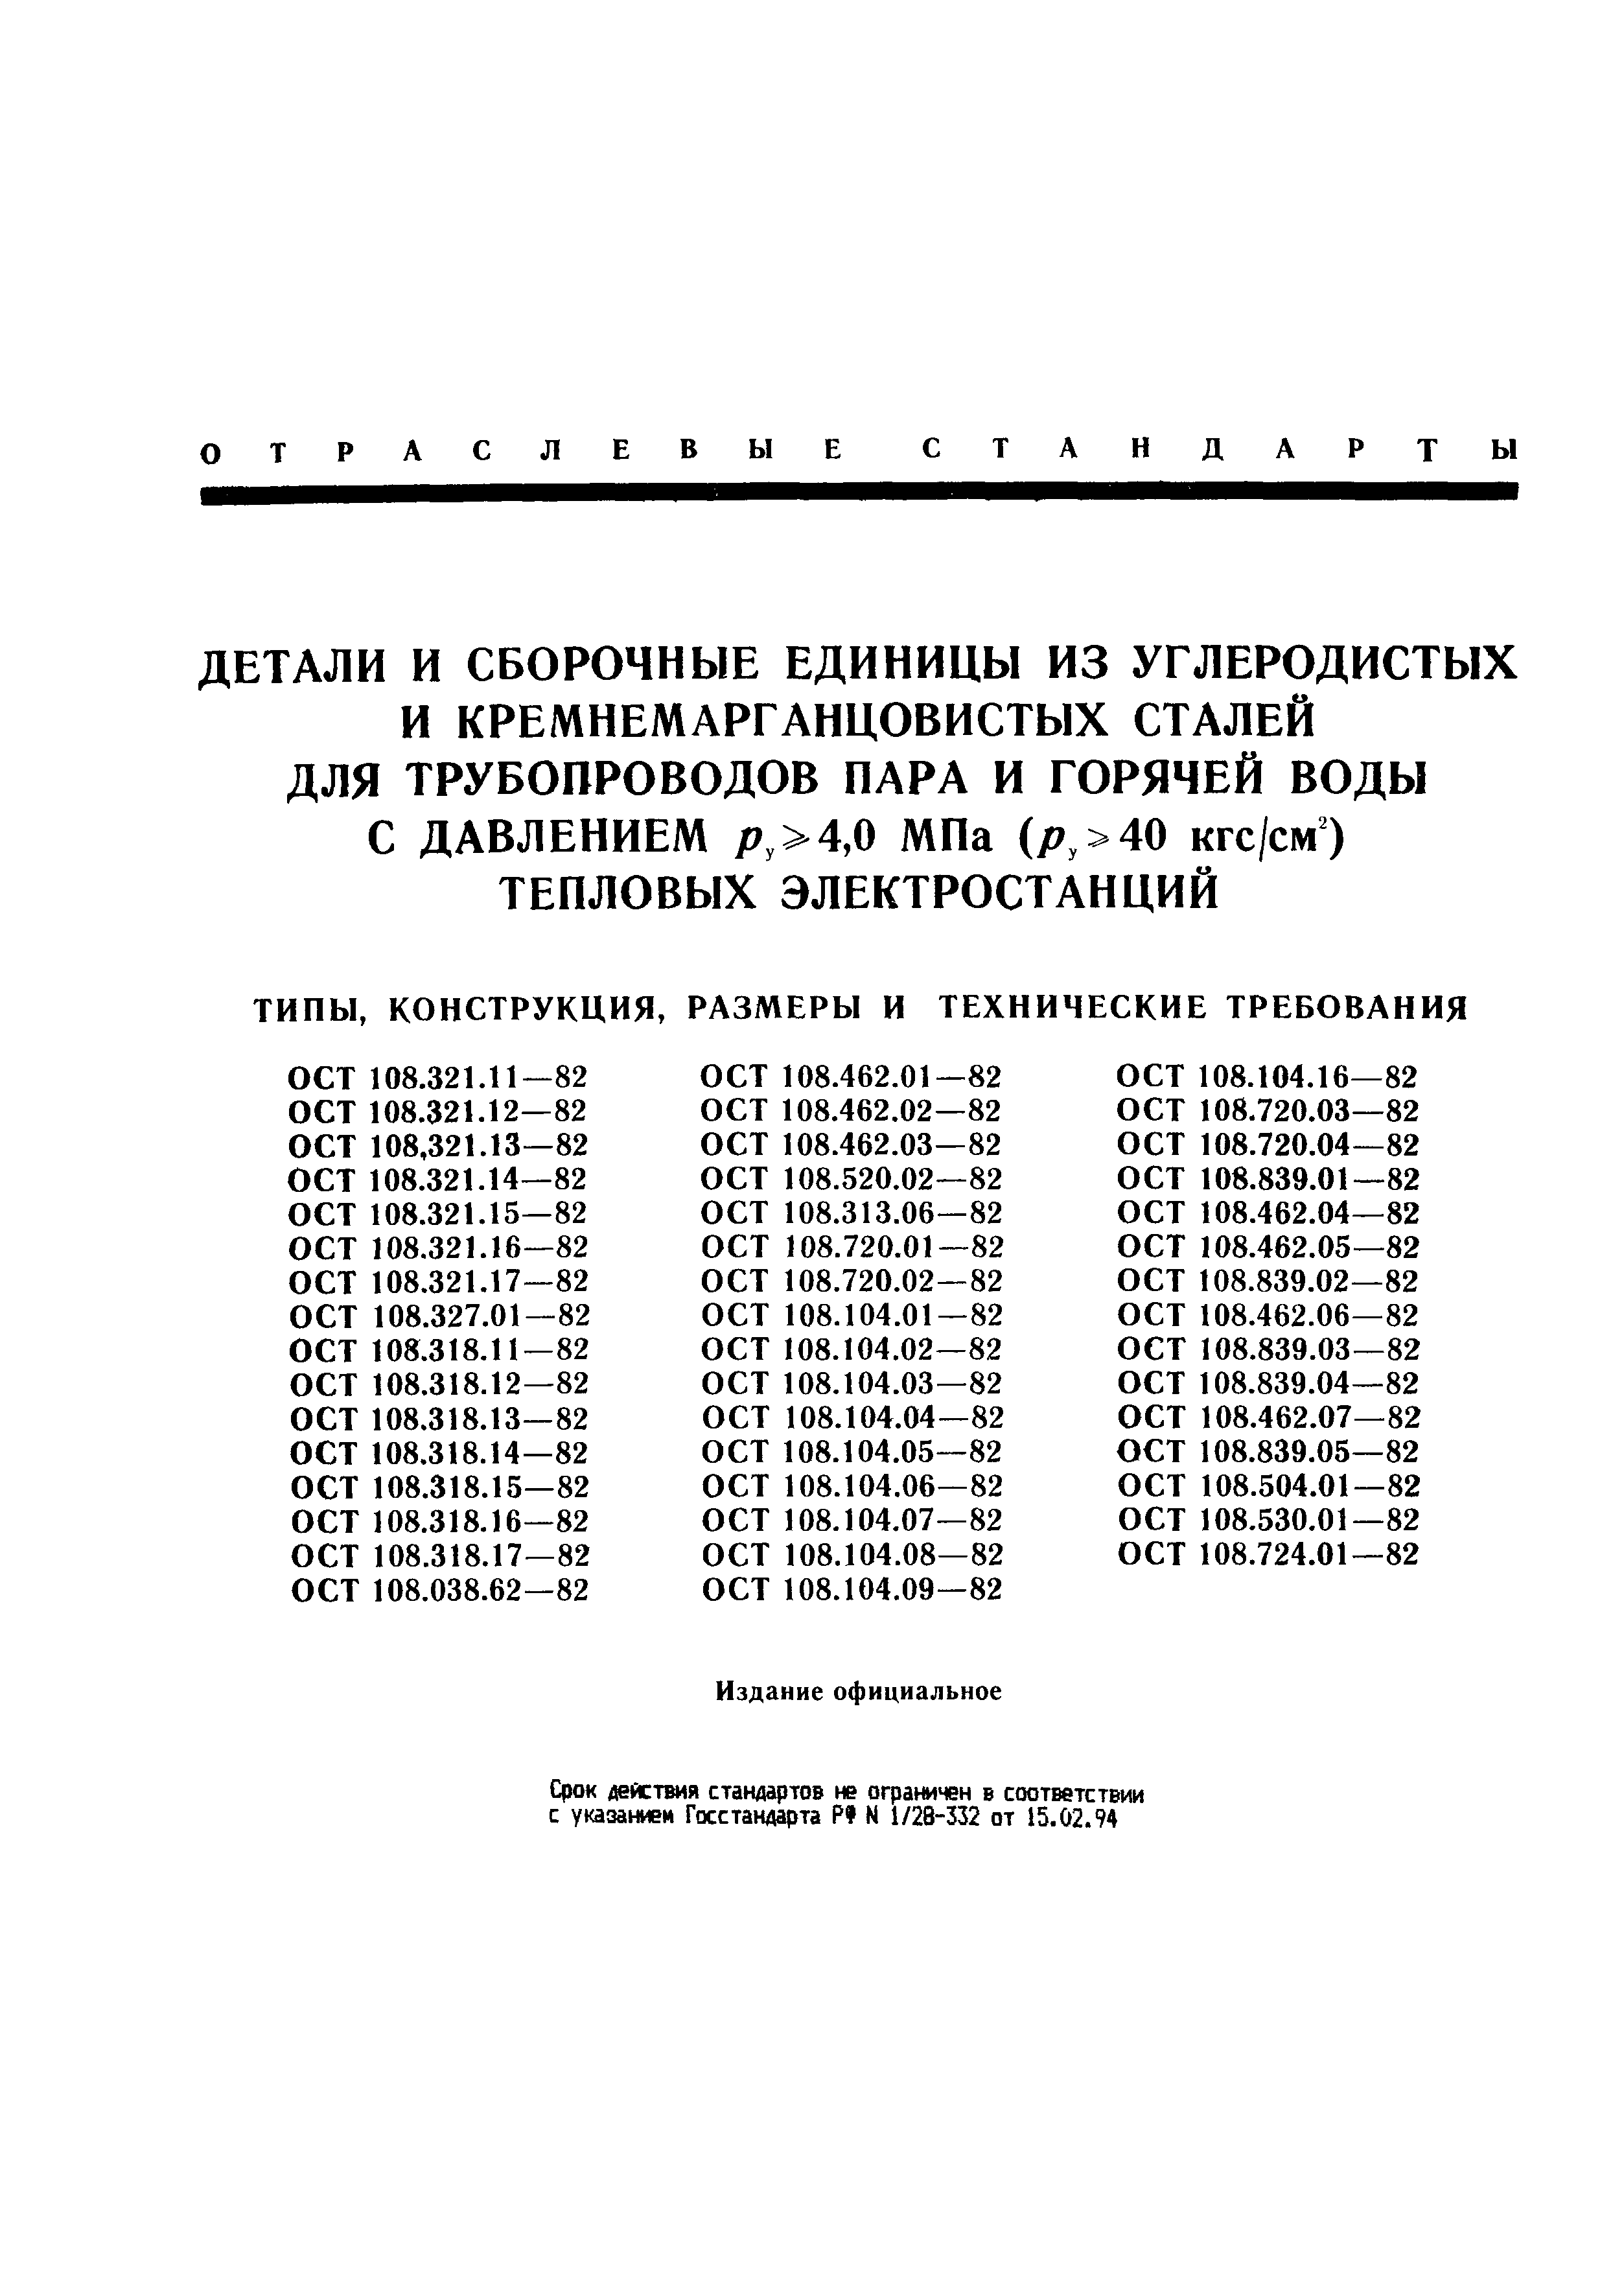 ОСТ 108.313.06-82